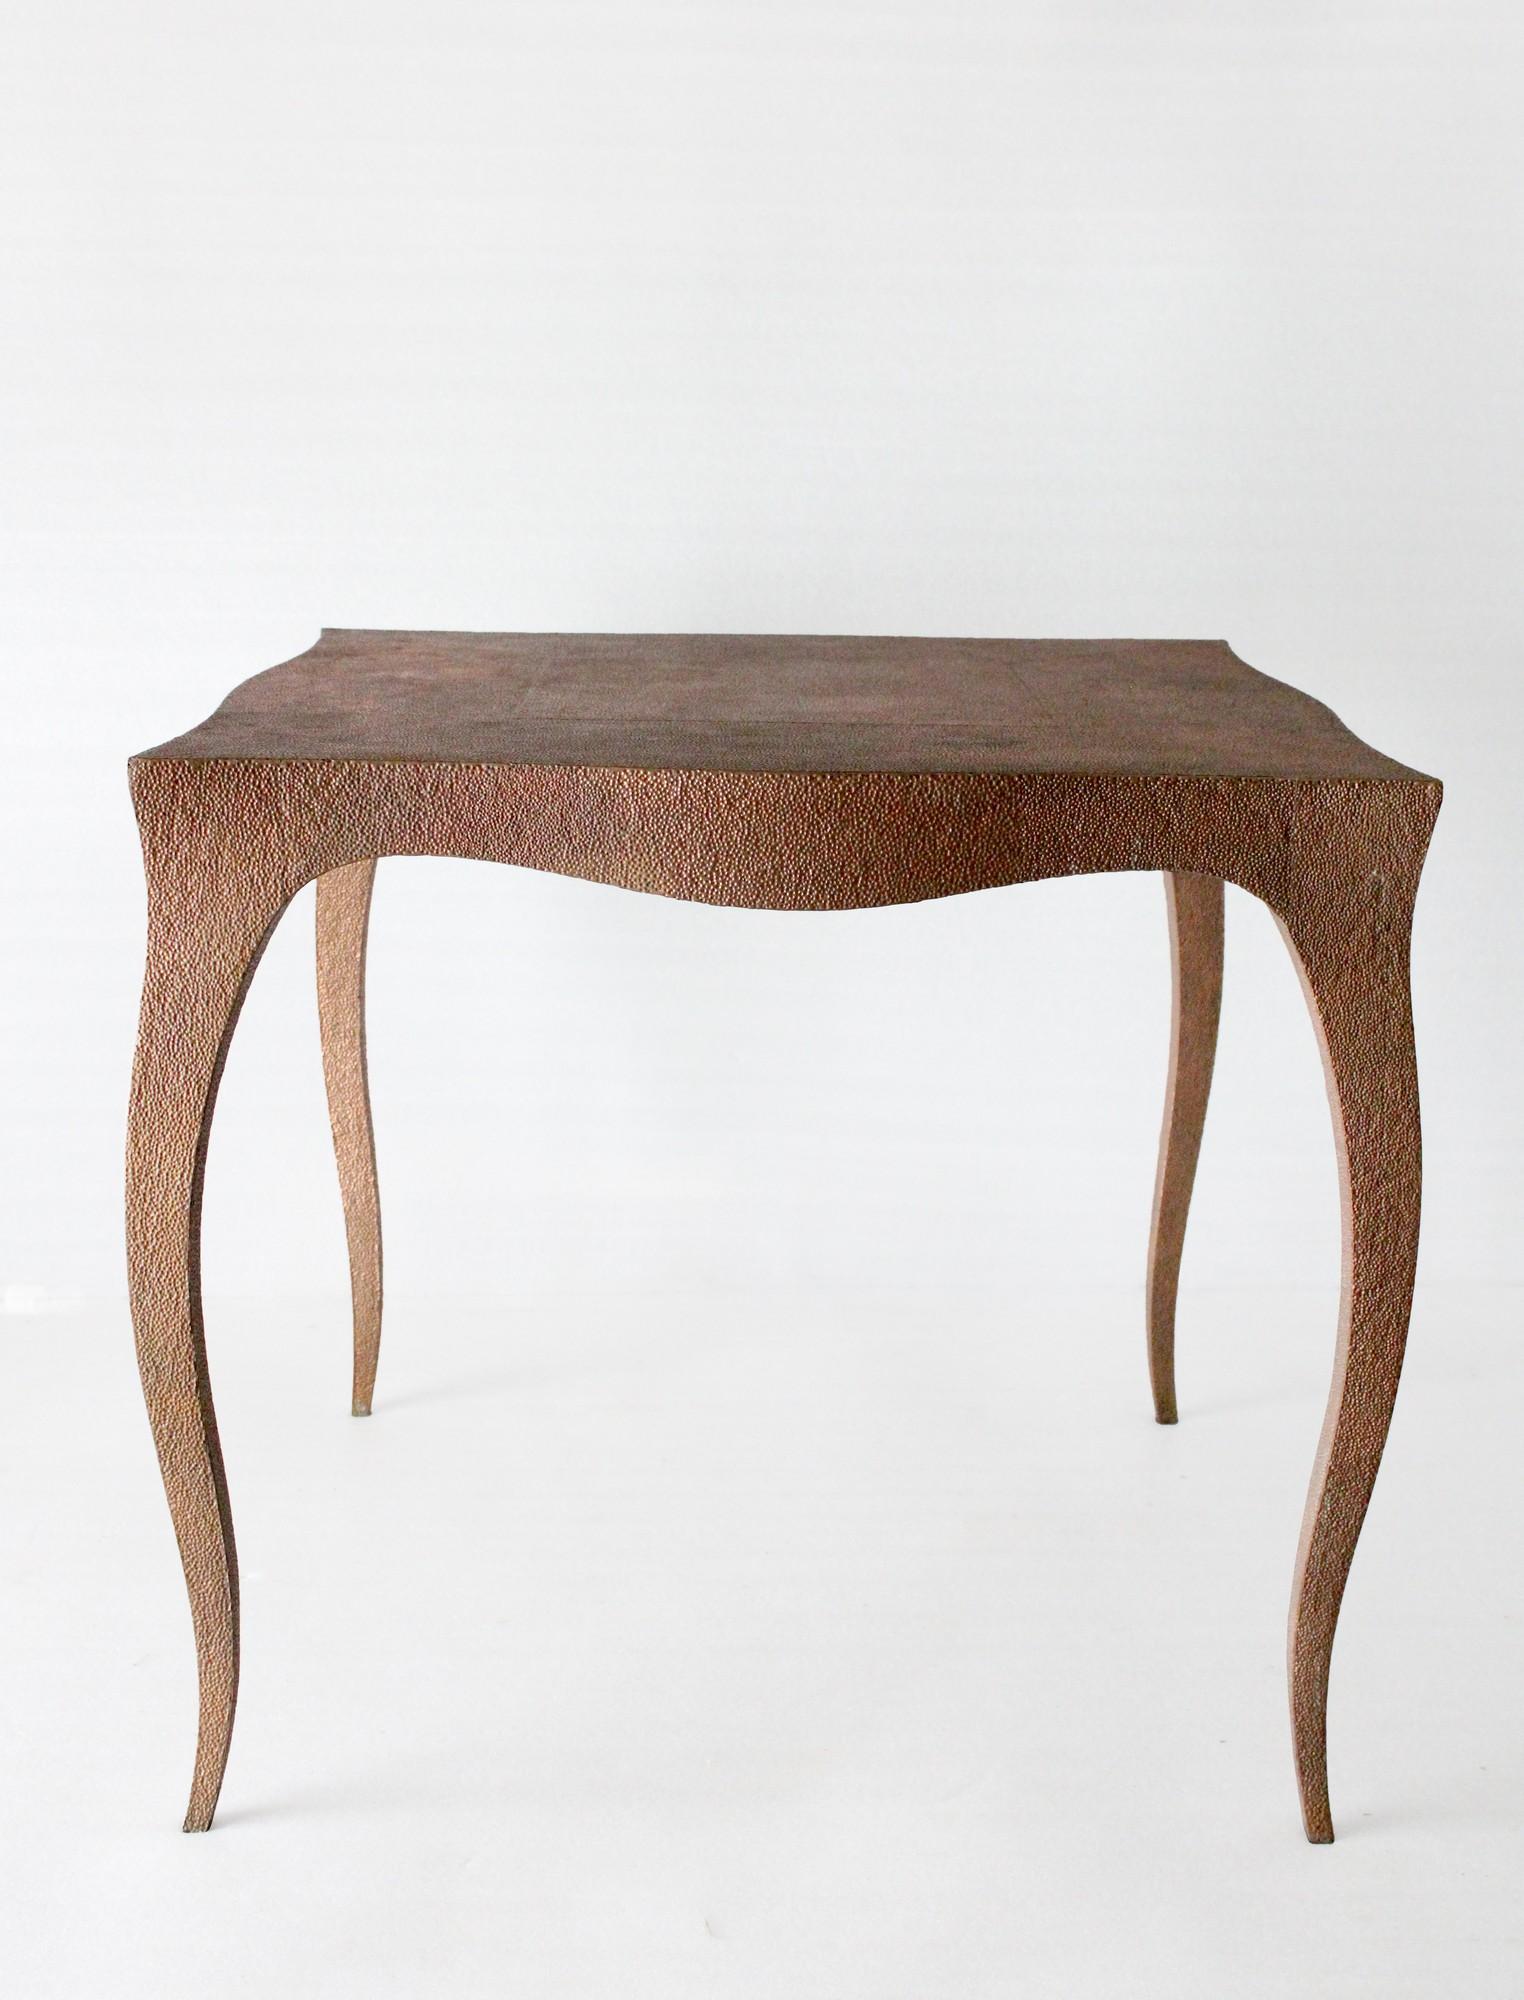 Louis Tisch XV Stil in Kupfer verkleidet von der renommierten Designer Paul Mathieu wählte den Namen 